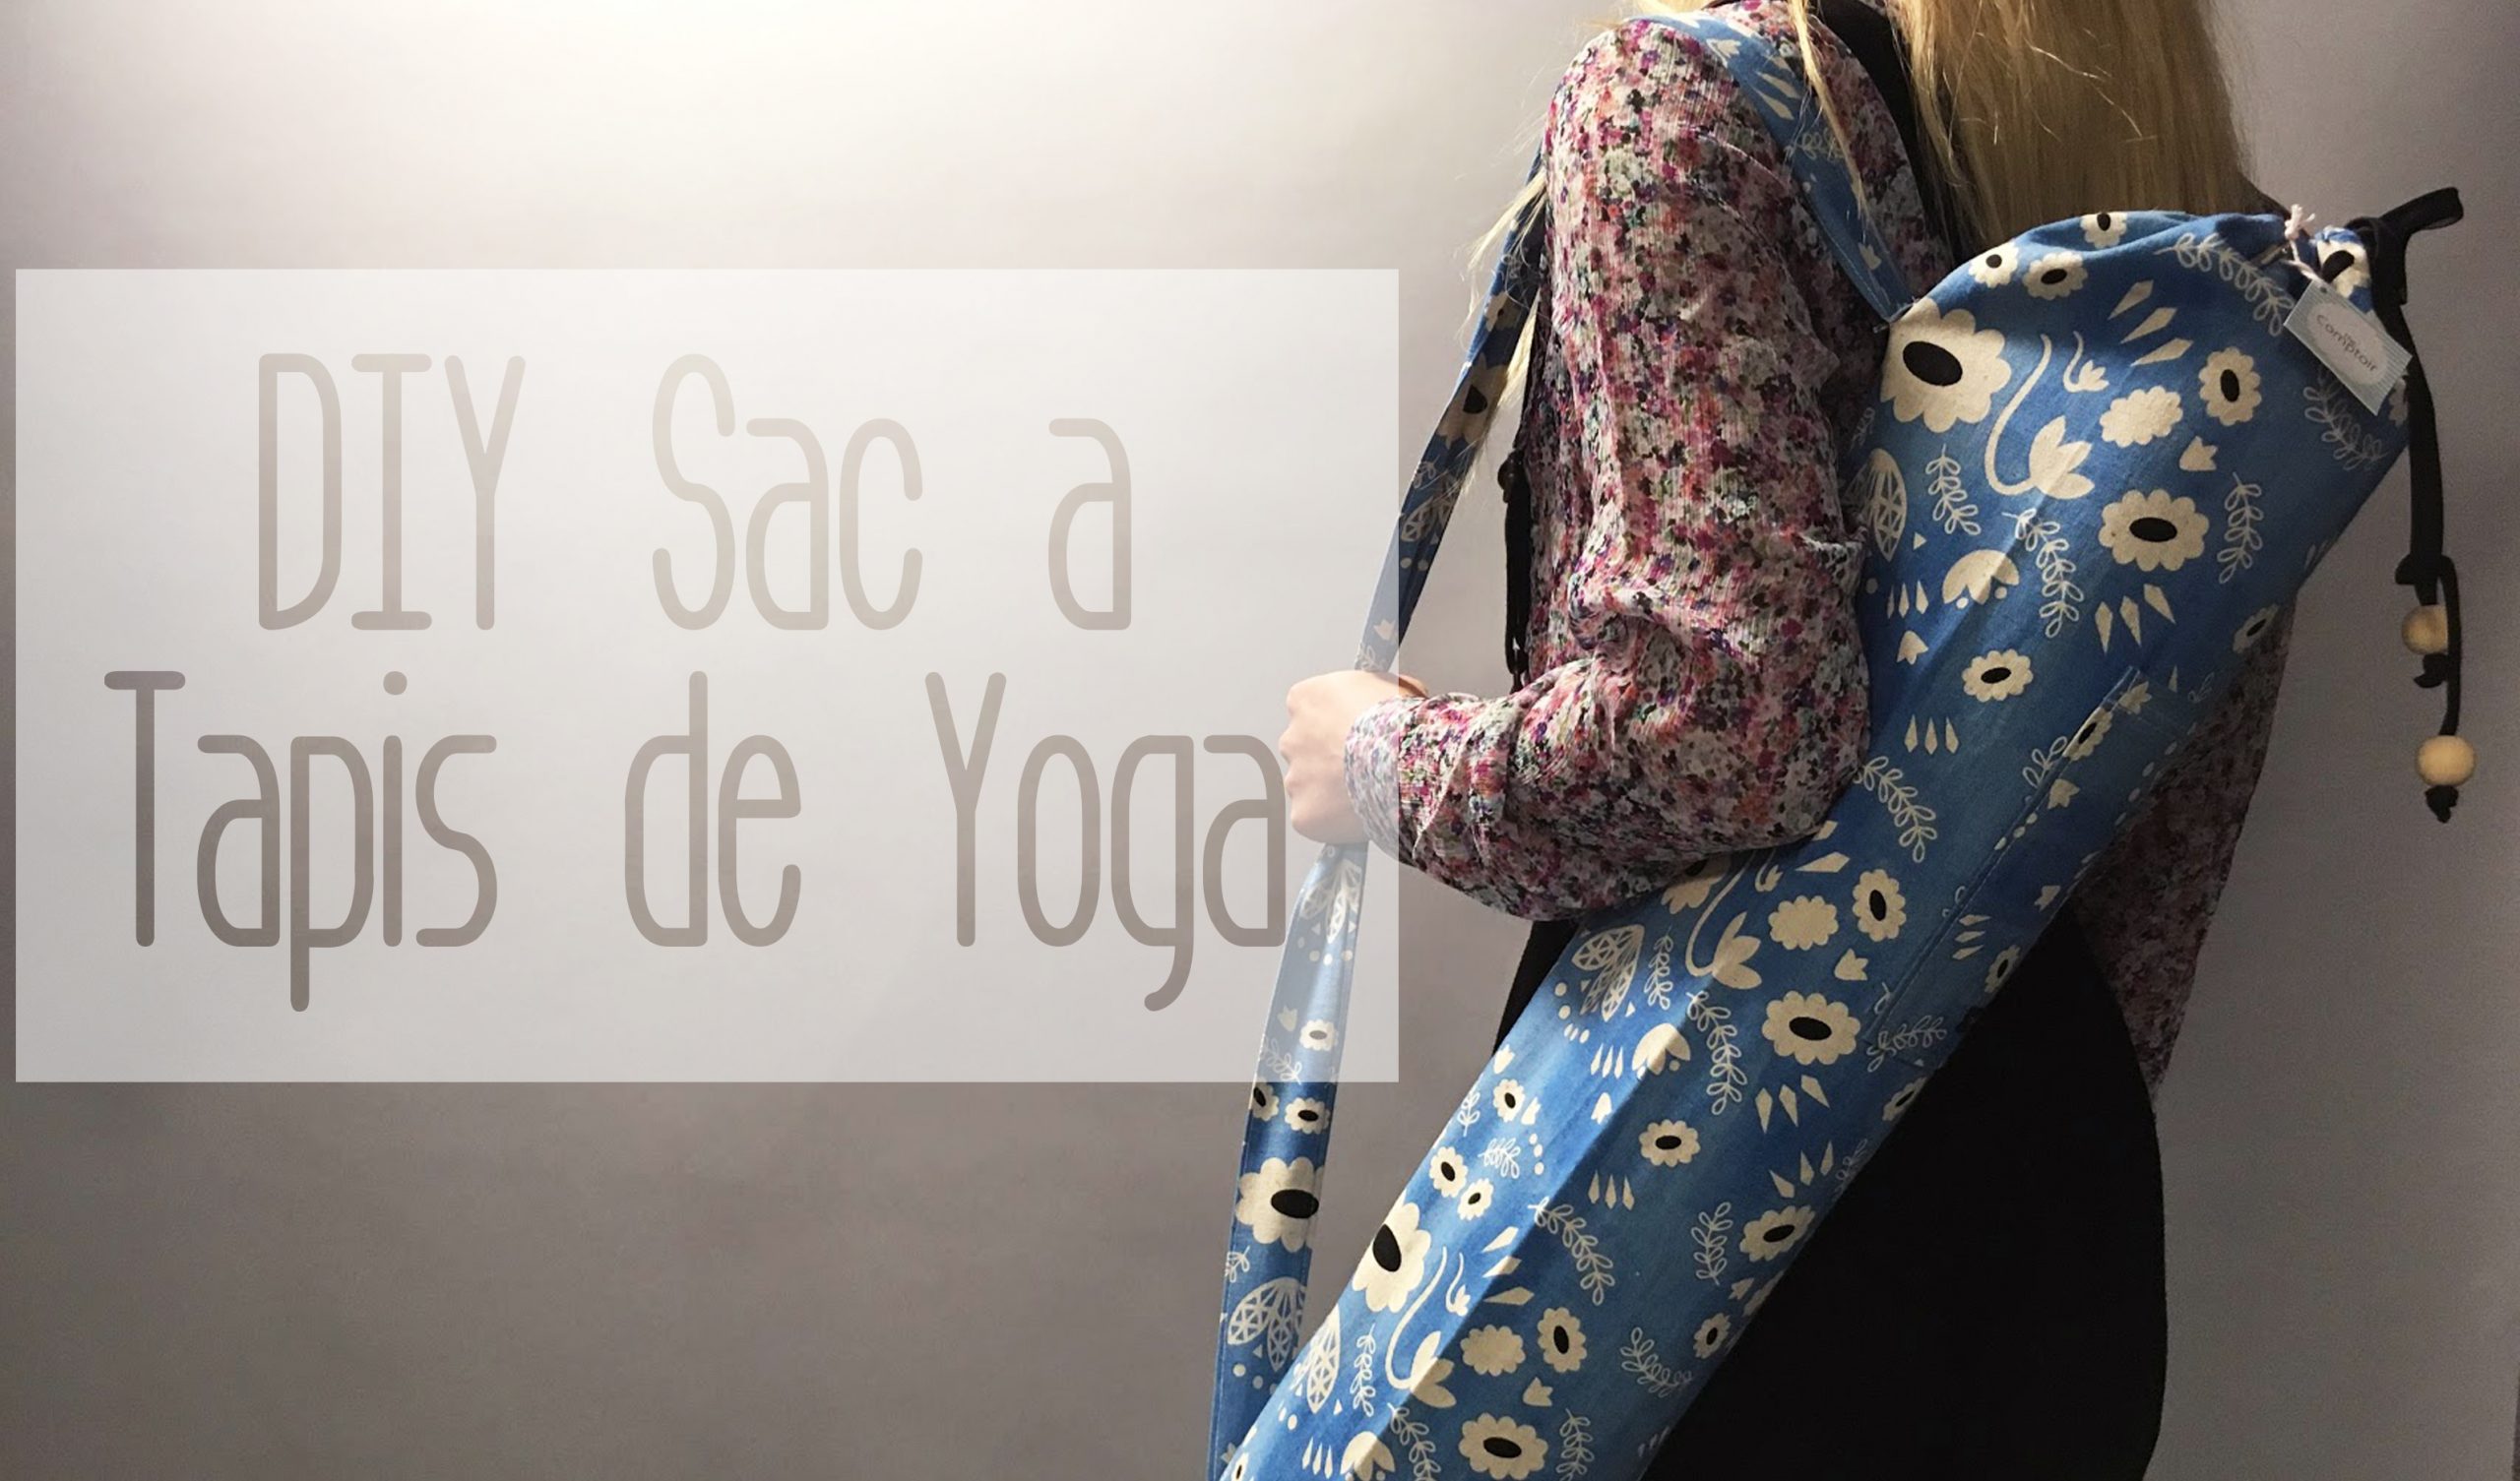 Retour des DIY couture : le sac à tapis de yoga